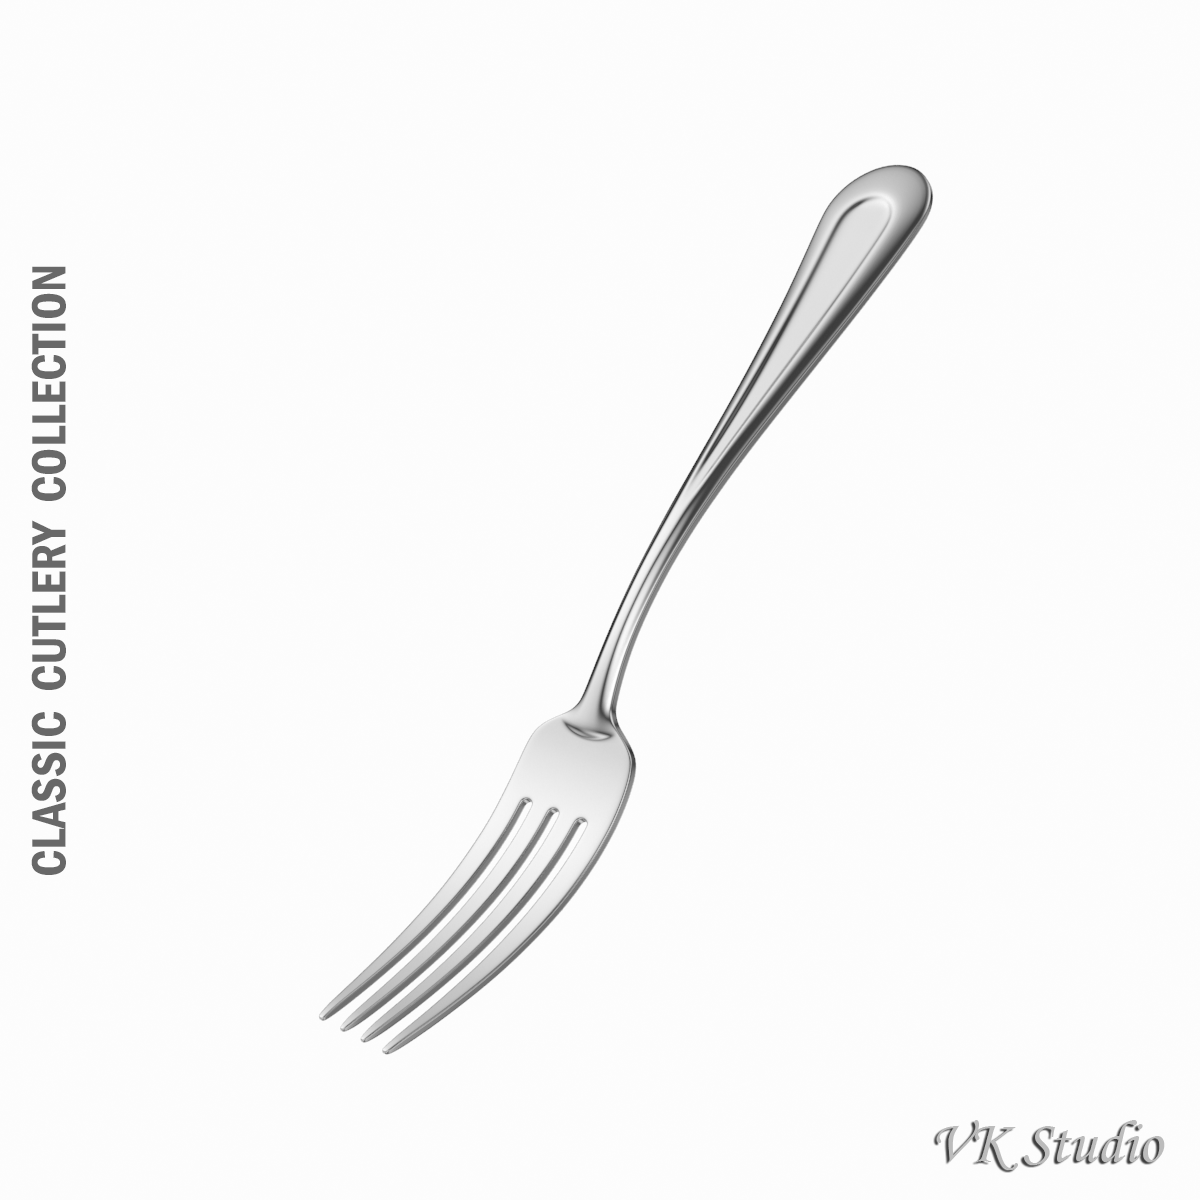 dessert fork 4 tines classic cutlery 3d model 3ds c4d fbx stl txt jpeg max max ma mb obj 285718